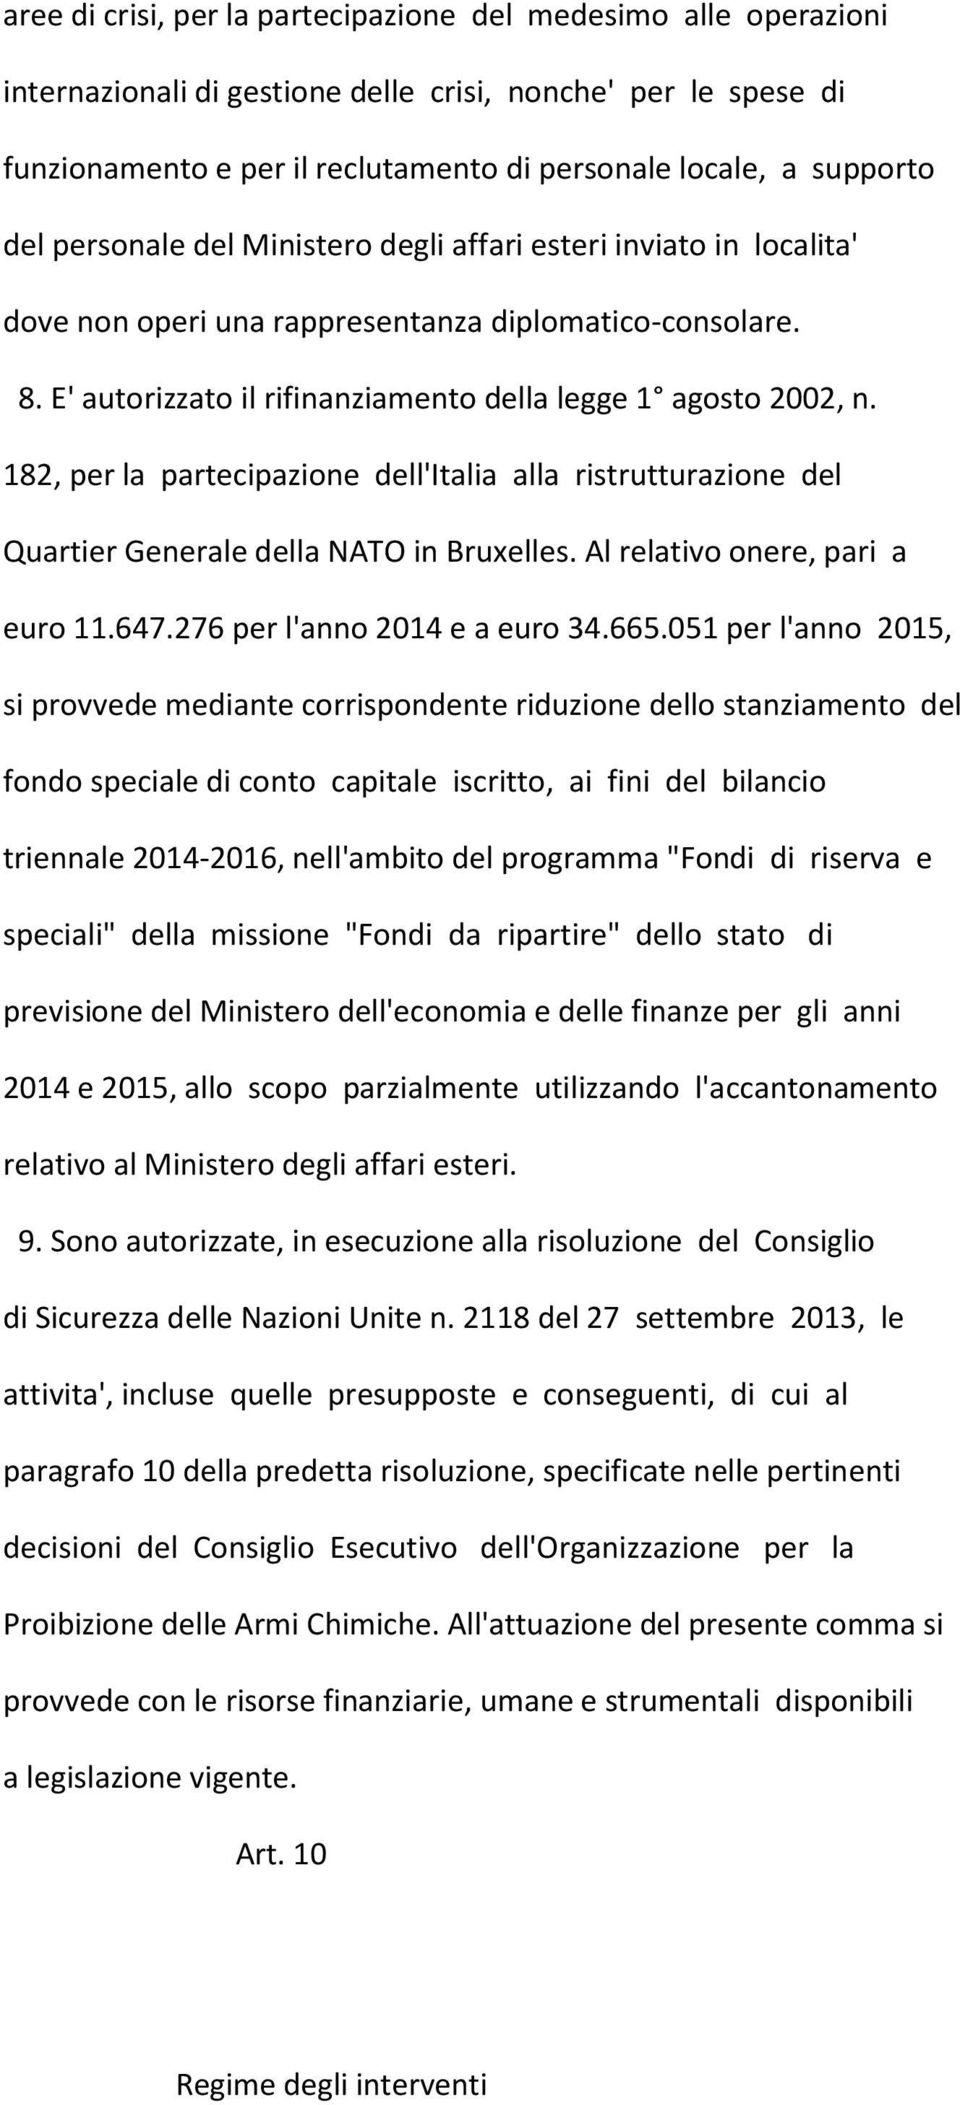 182, per la partecipazione dell'italia alla ristrutturazione del Quartier Generale della NATO in Bruxelles. Al relativo onere, pari a euro 11.647.276 per l'anno 2014 e a euro 34.665.